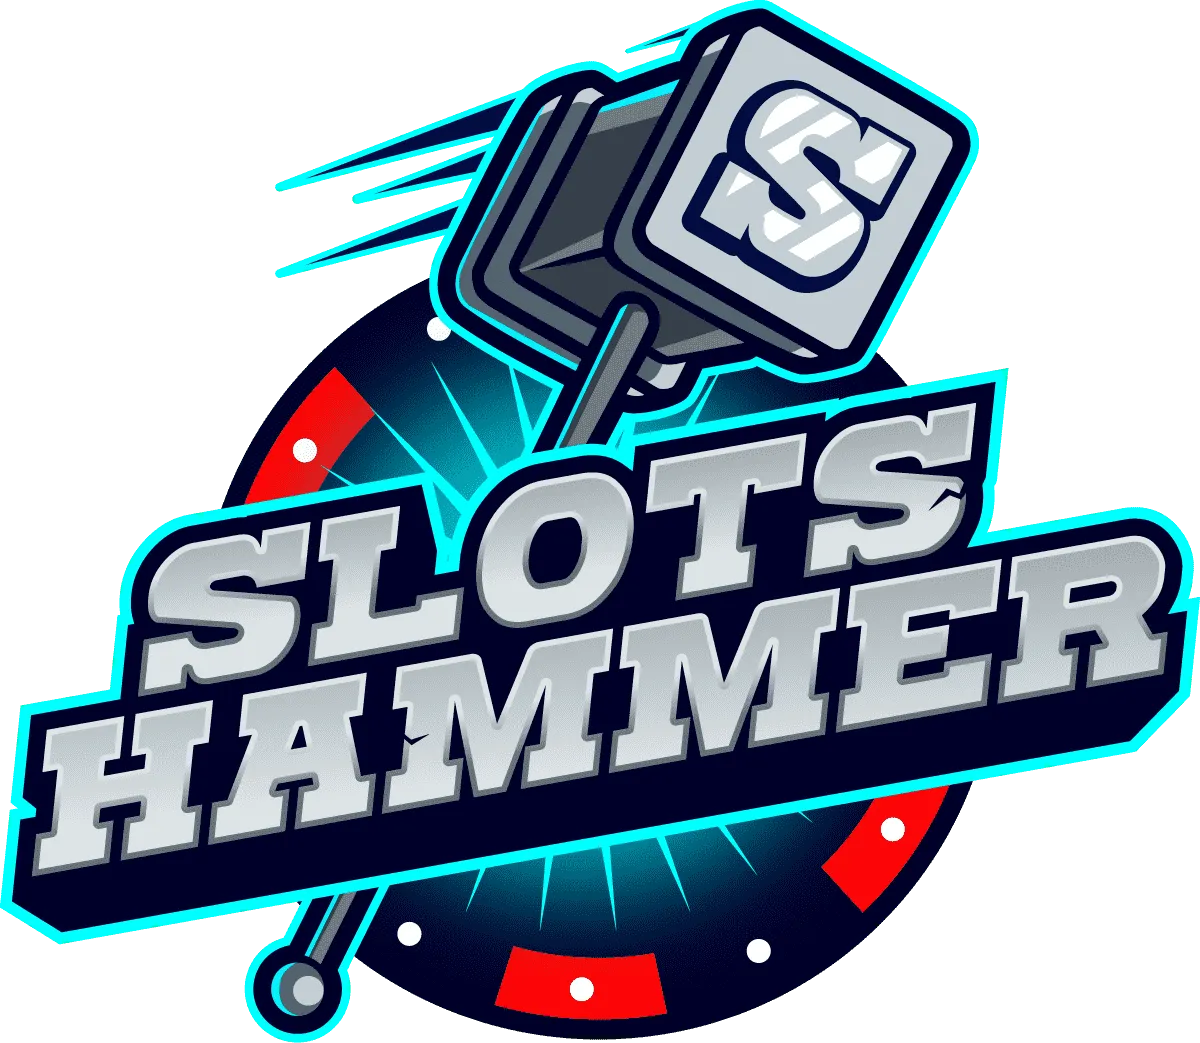 Bónus no Slots Hammer Casino: Oferta de Reembolso de 10% ao Fim de Semana
